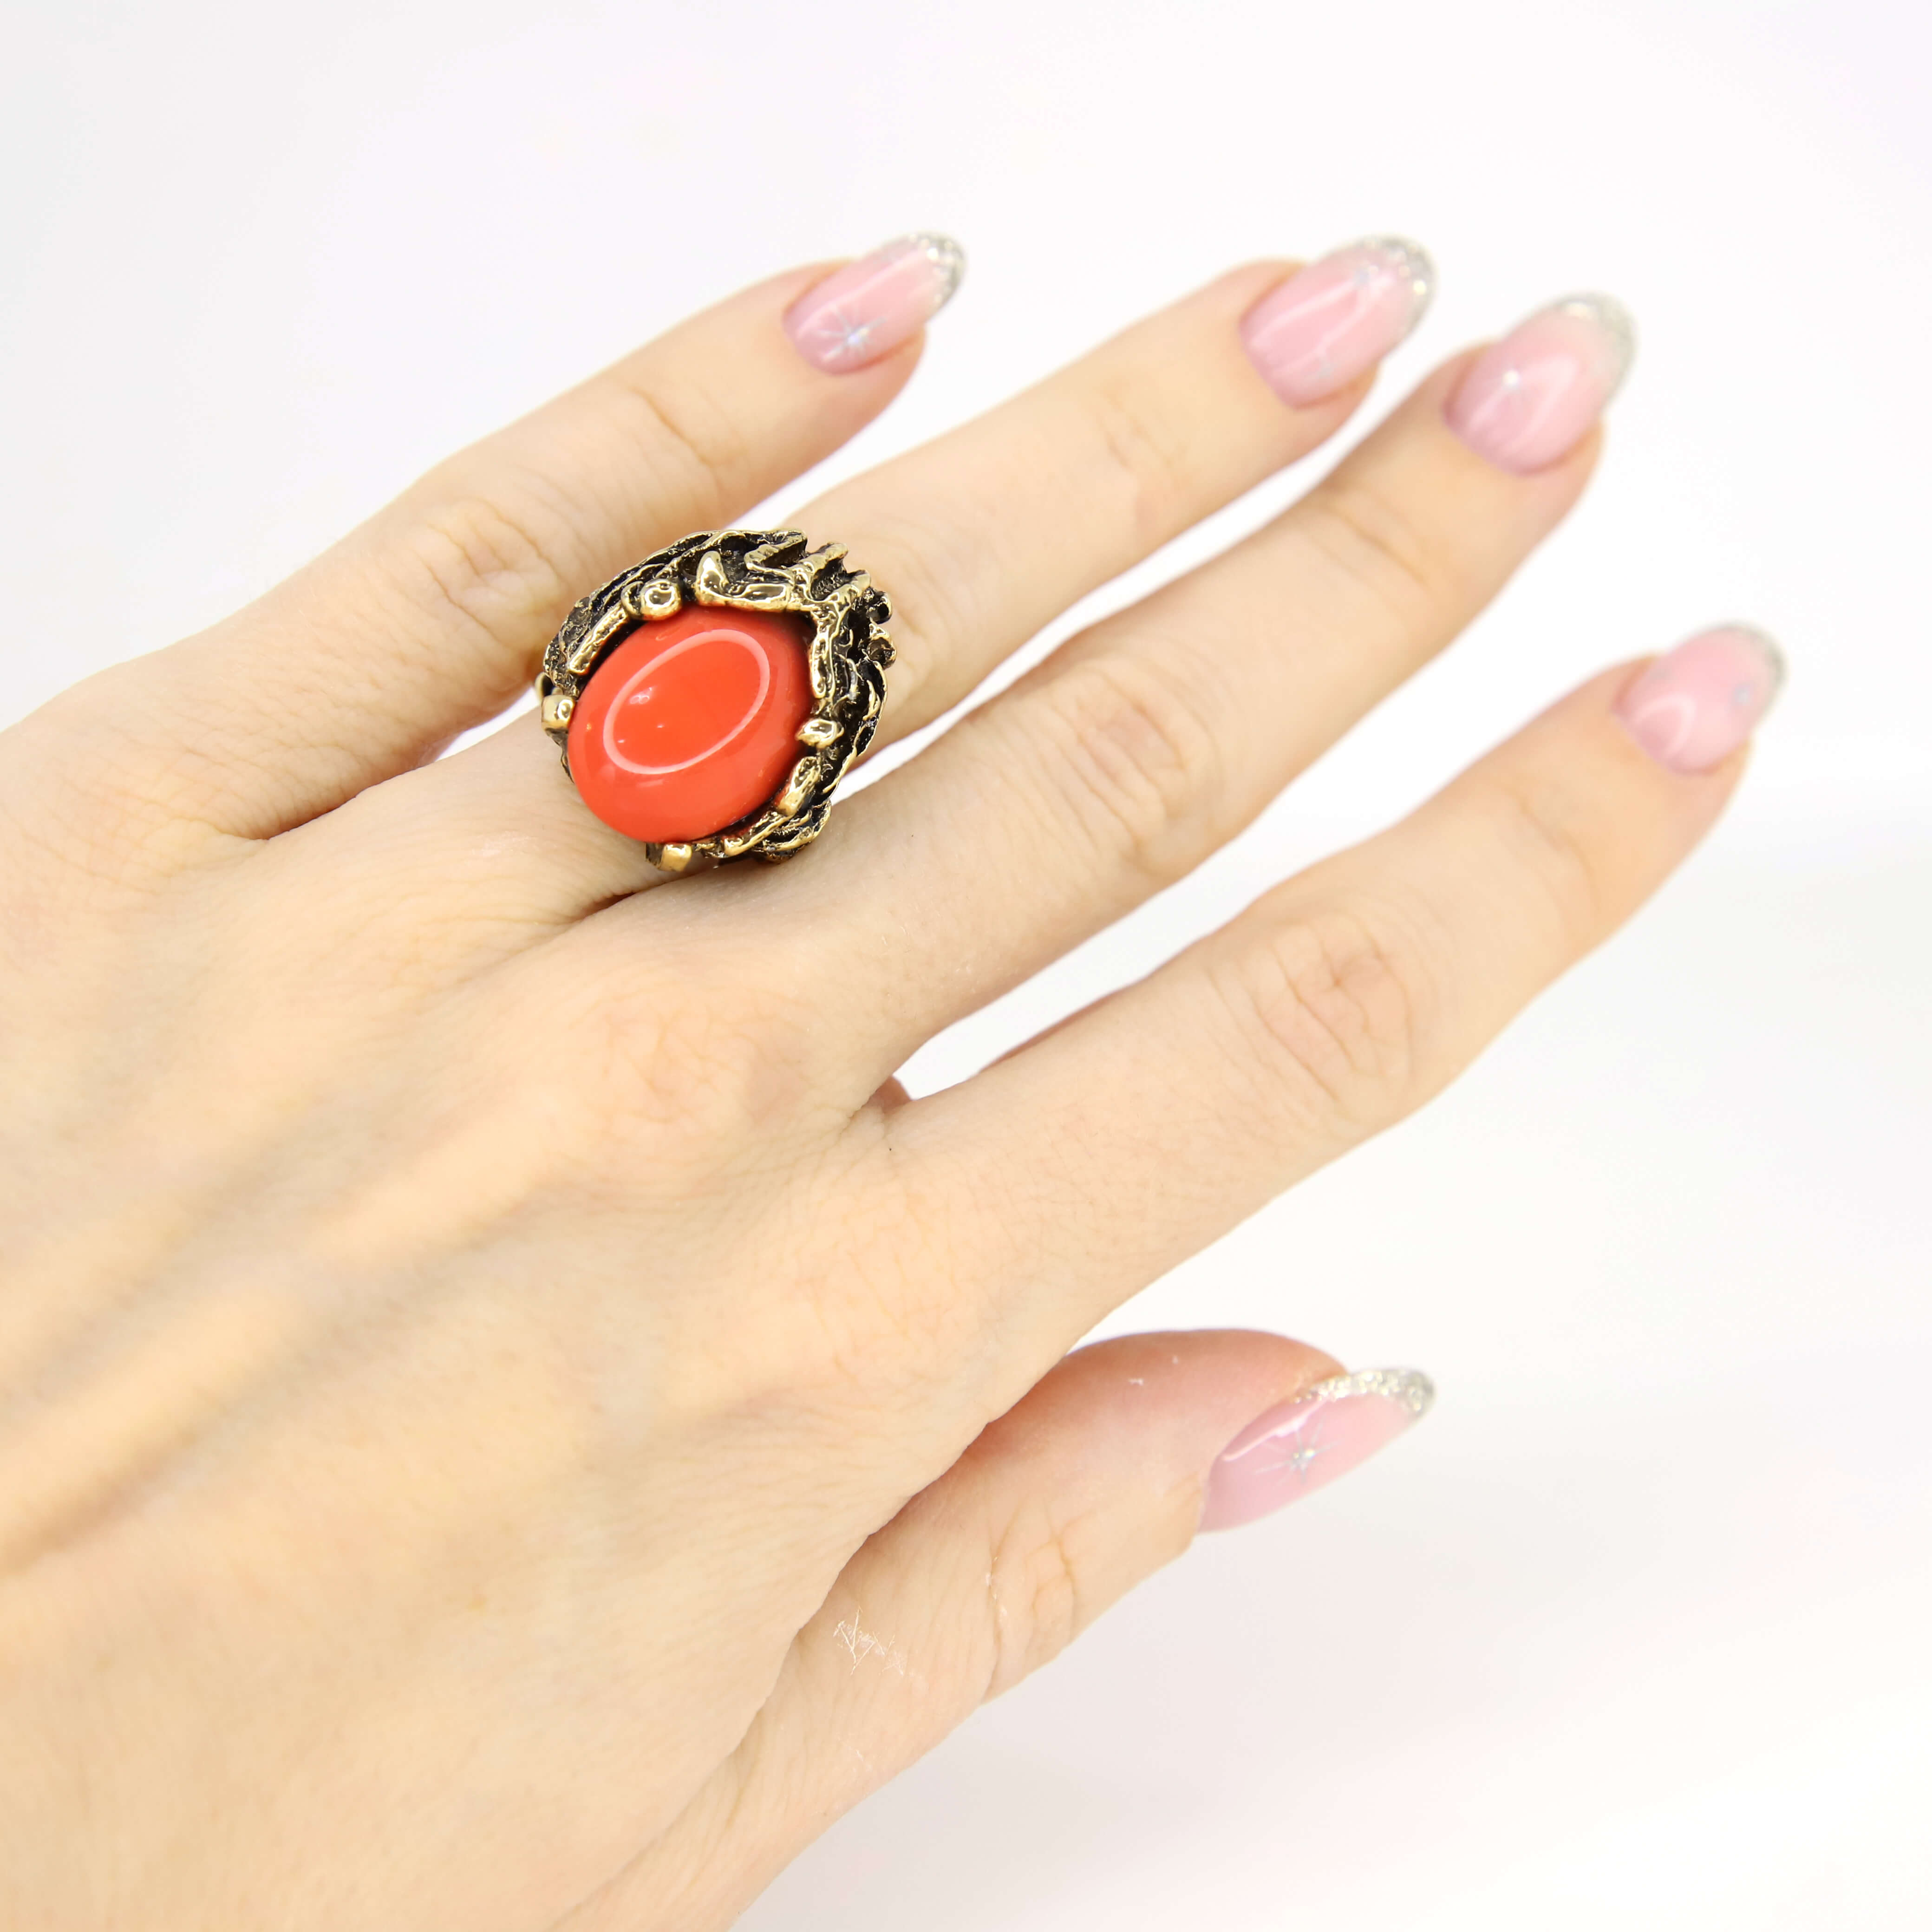 Винтажное кольцо Vogue размер 15-17, цвет Красный, фото 1